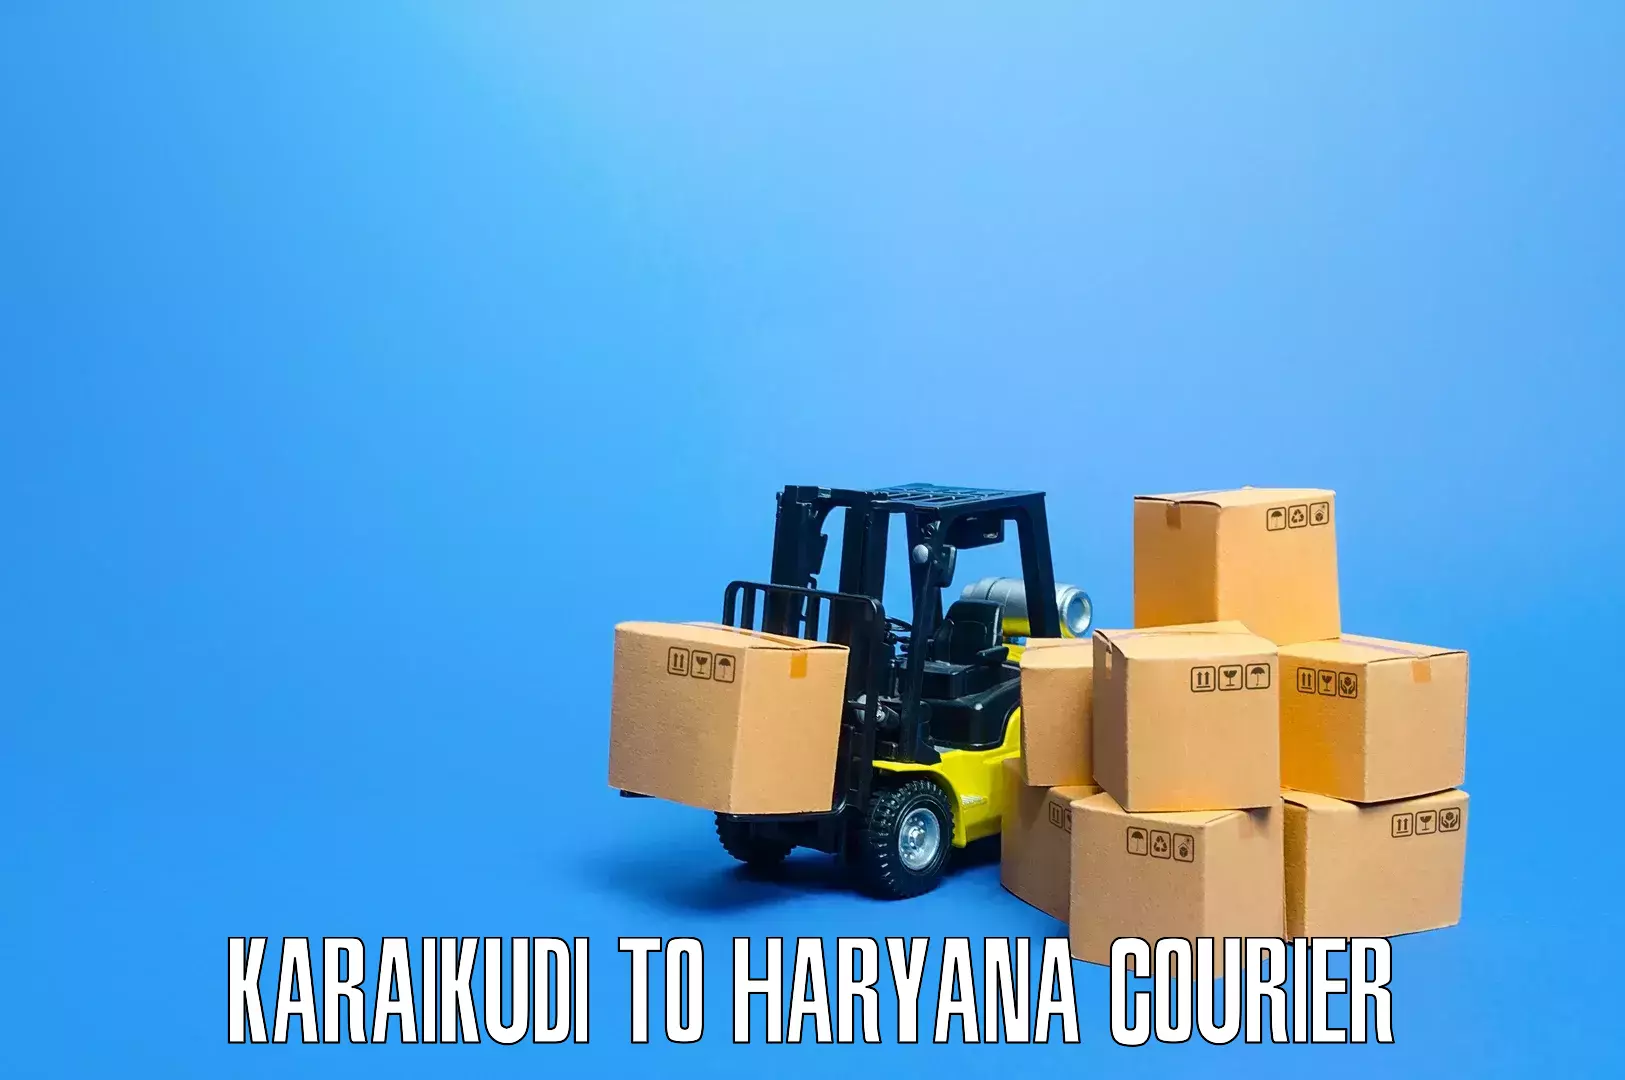 Home moving service Karaikudi to Gurgaon